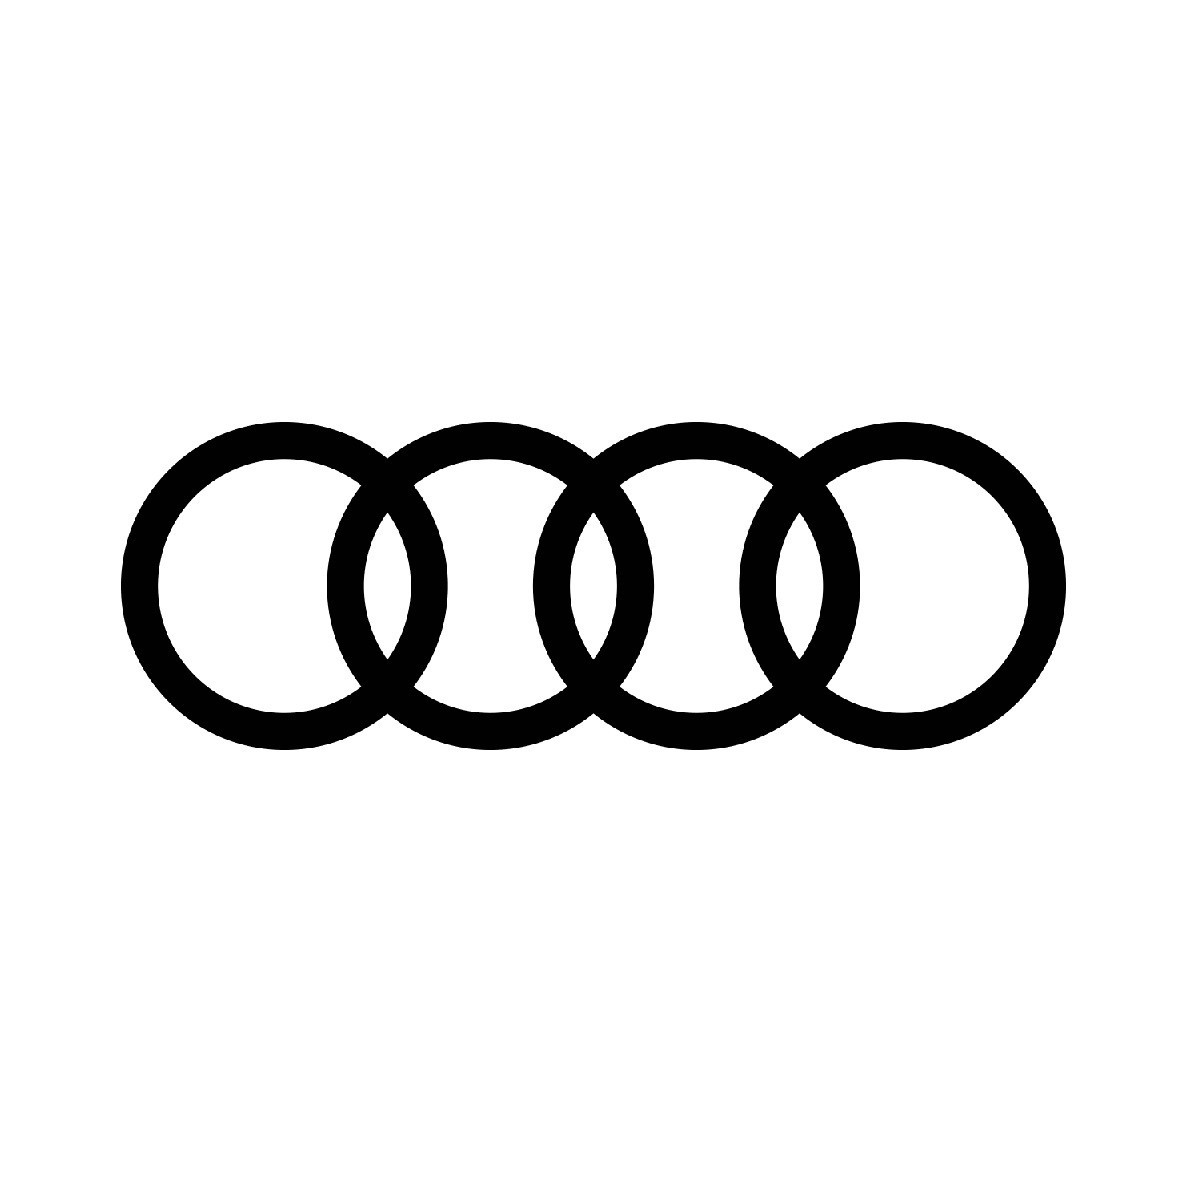 Audi AG Logo